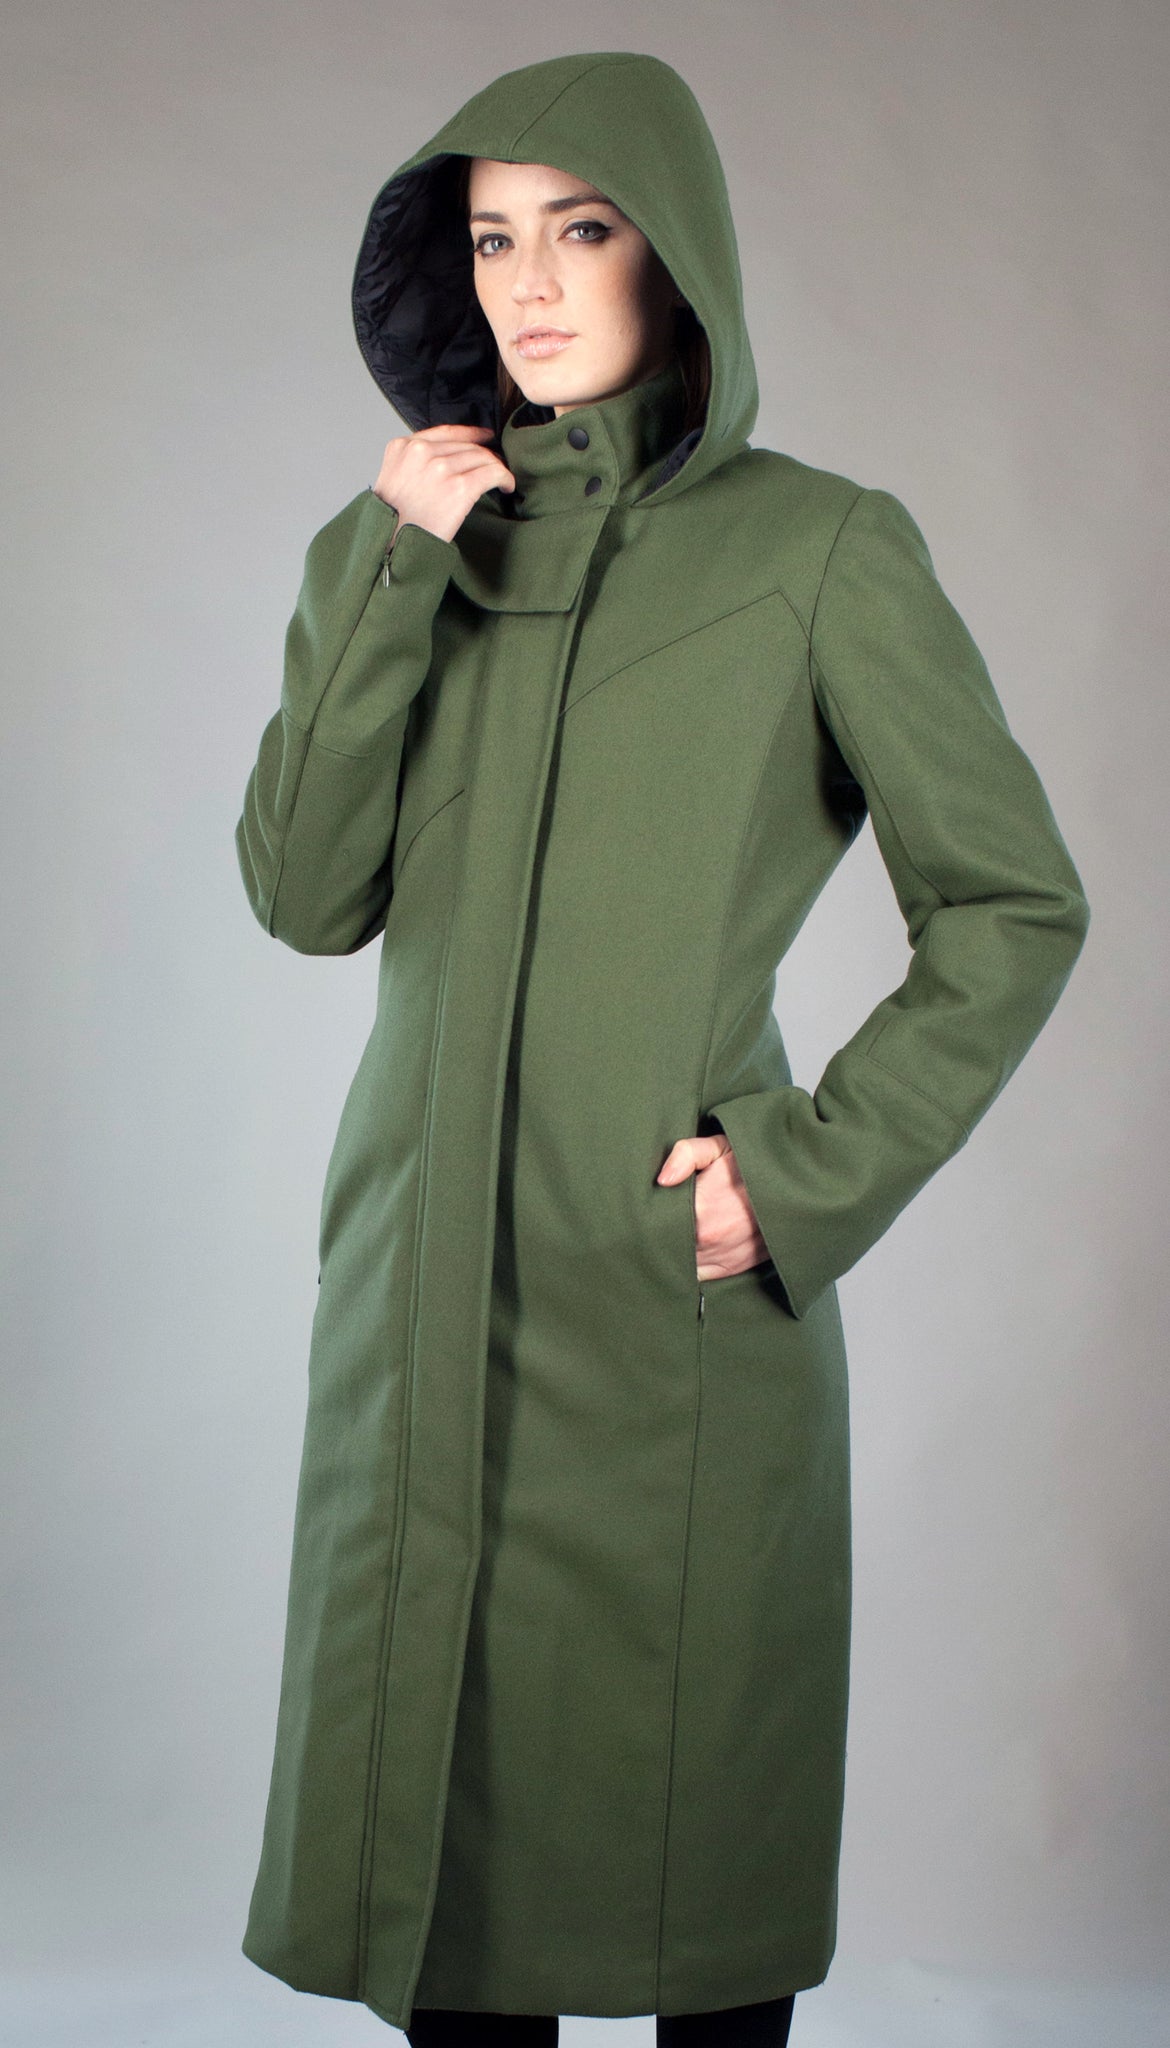 Women's Coats with Hood Sherpa Jacket Women Faux Fur Coat Winter